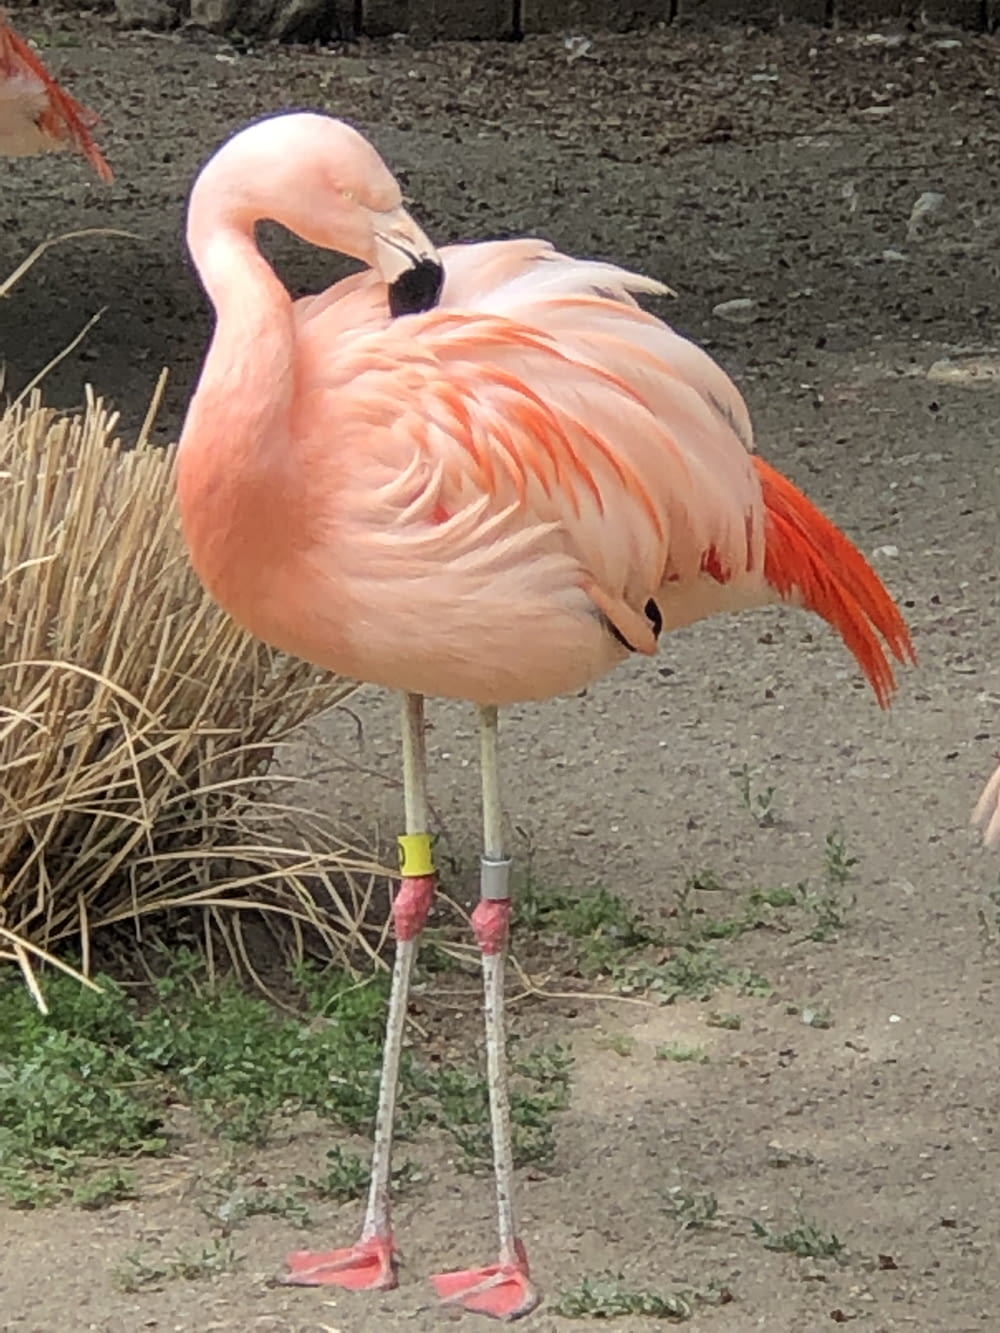 pink flamingo on brown soil during daytime